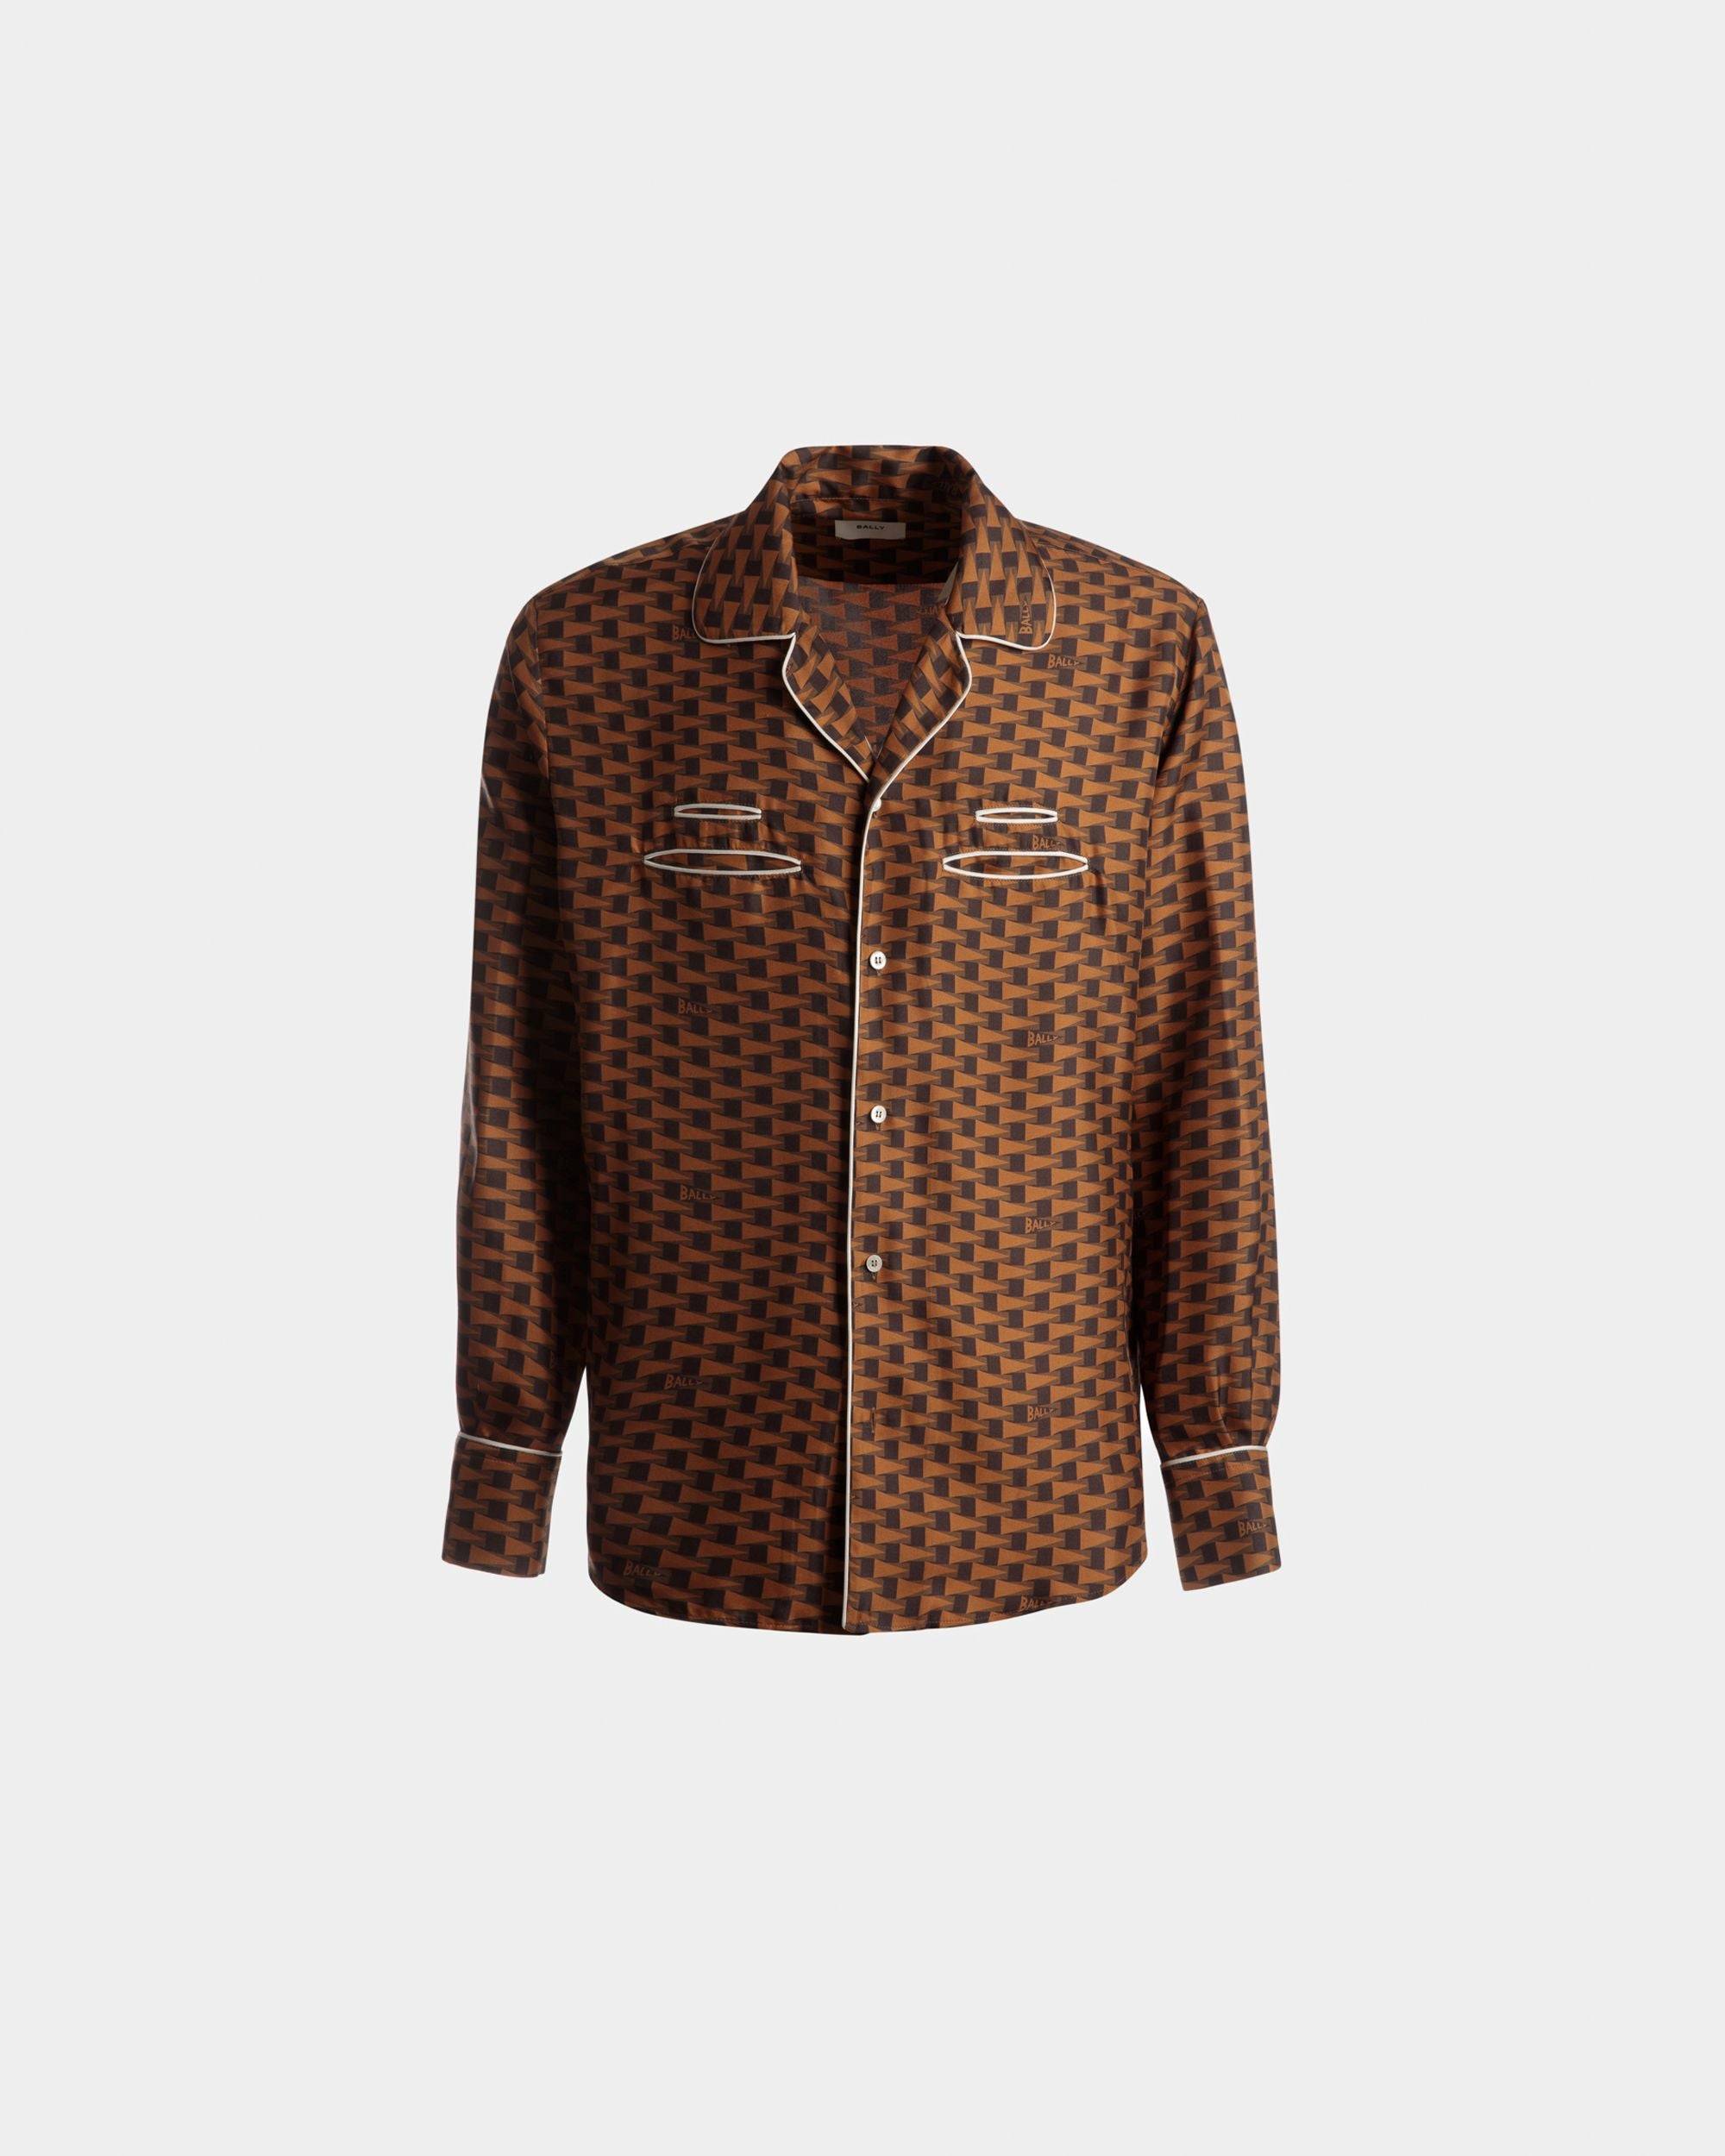 Pennant Print Shirt | Men's Shirt | Brown Silk | Bally | Still Life Front